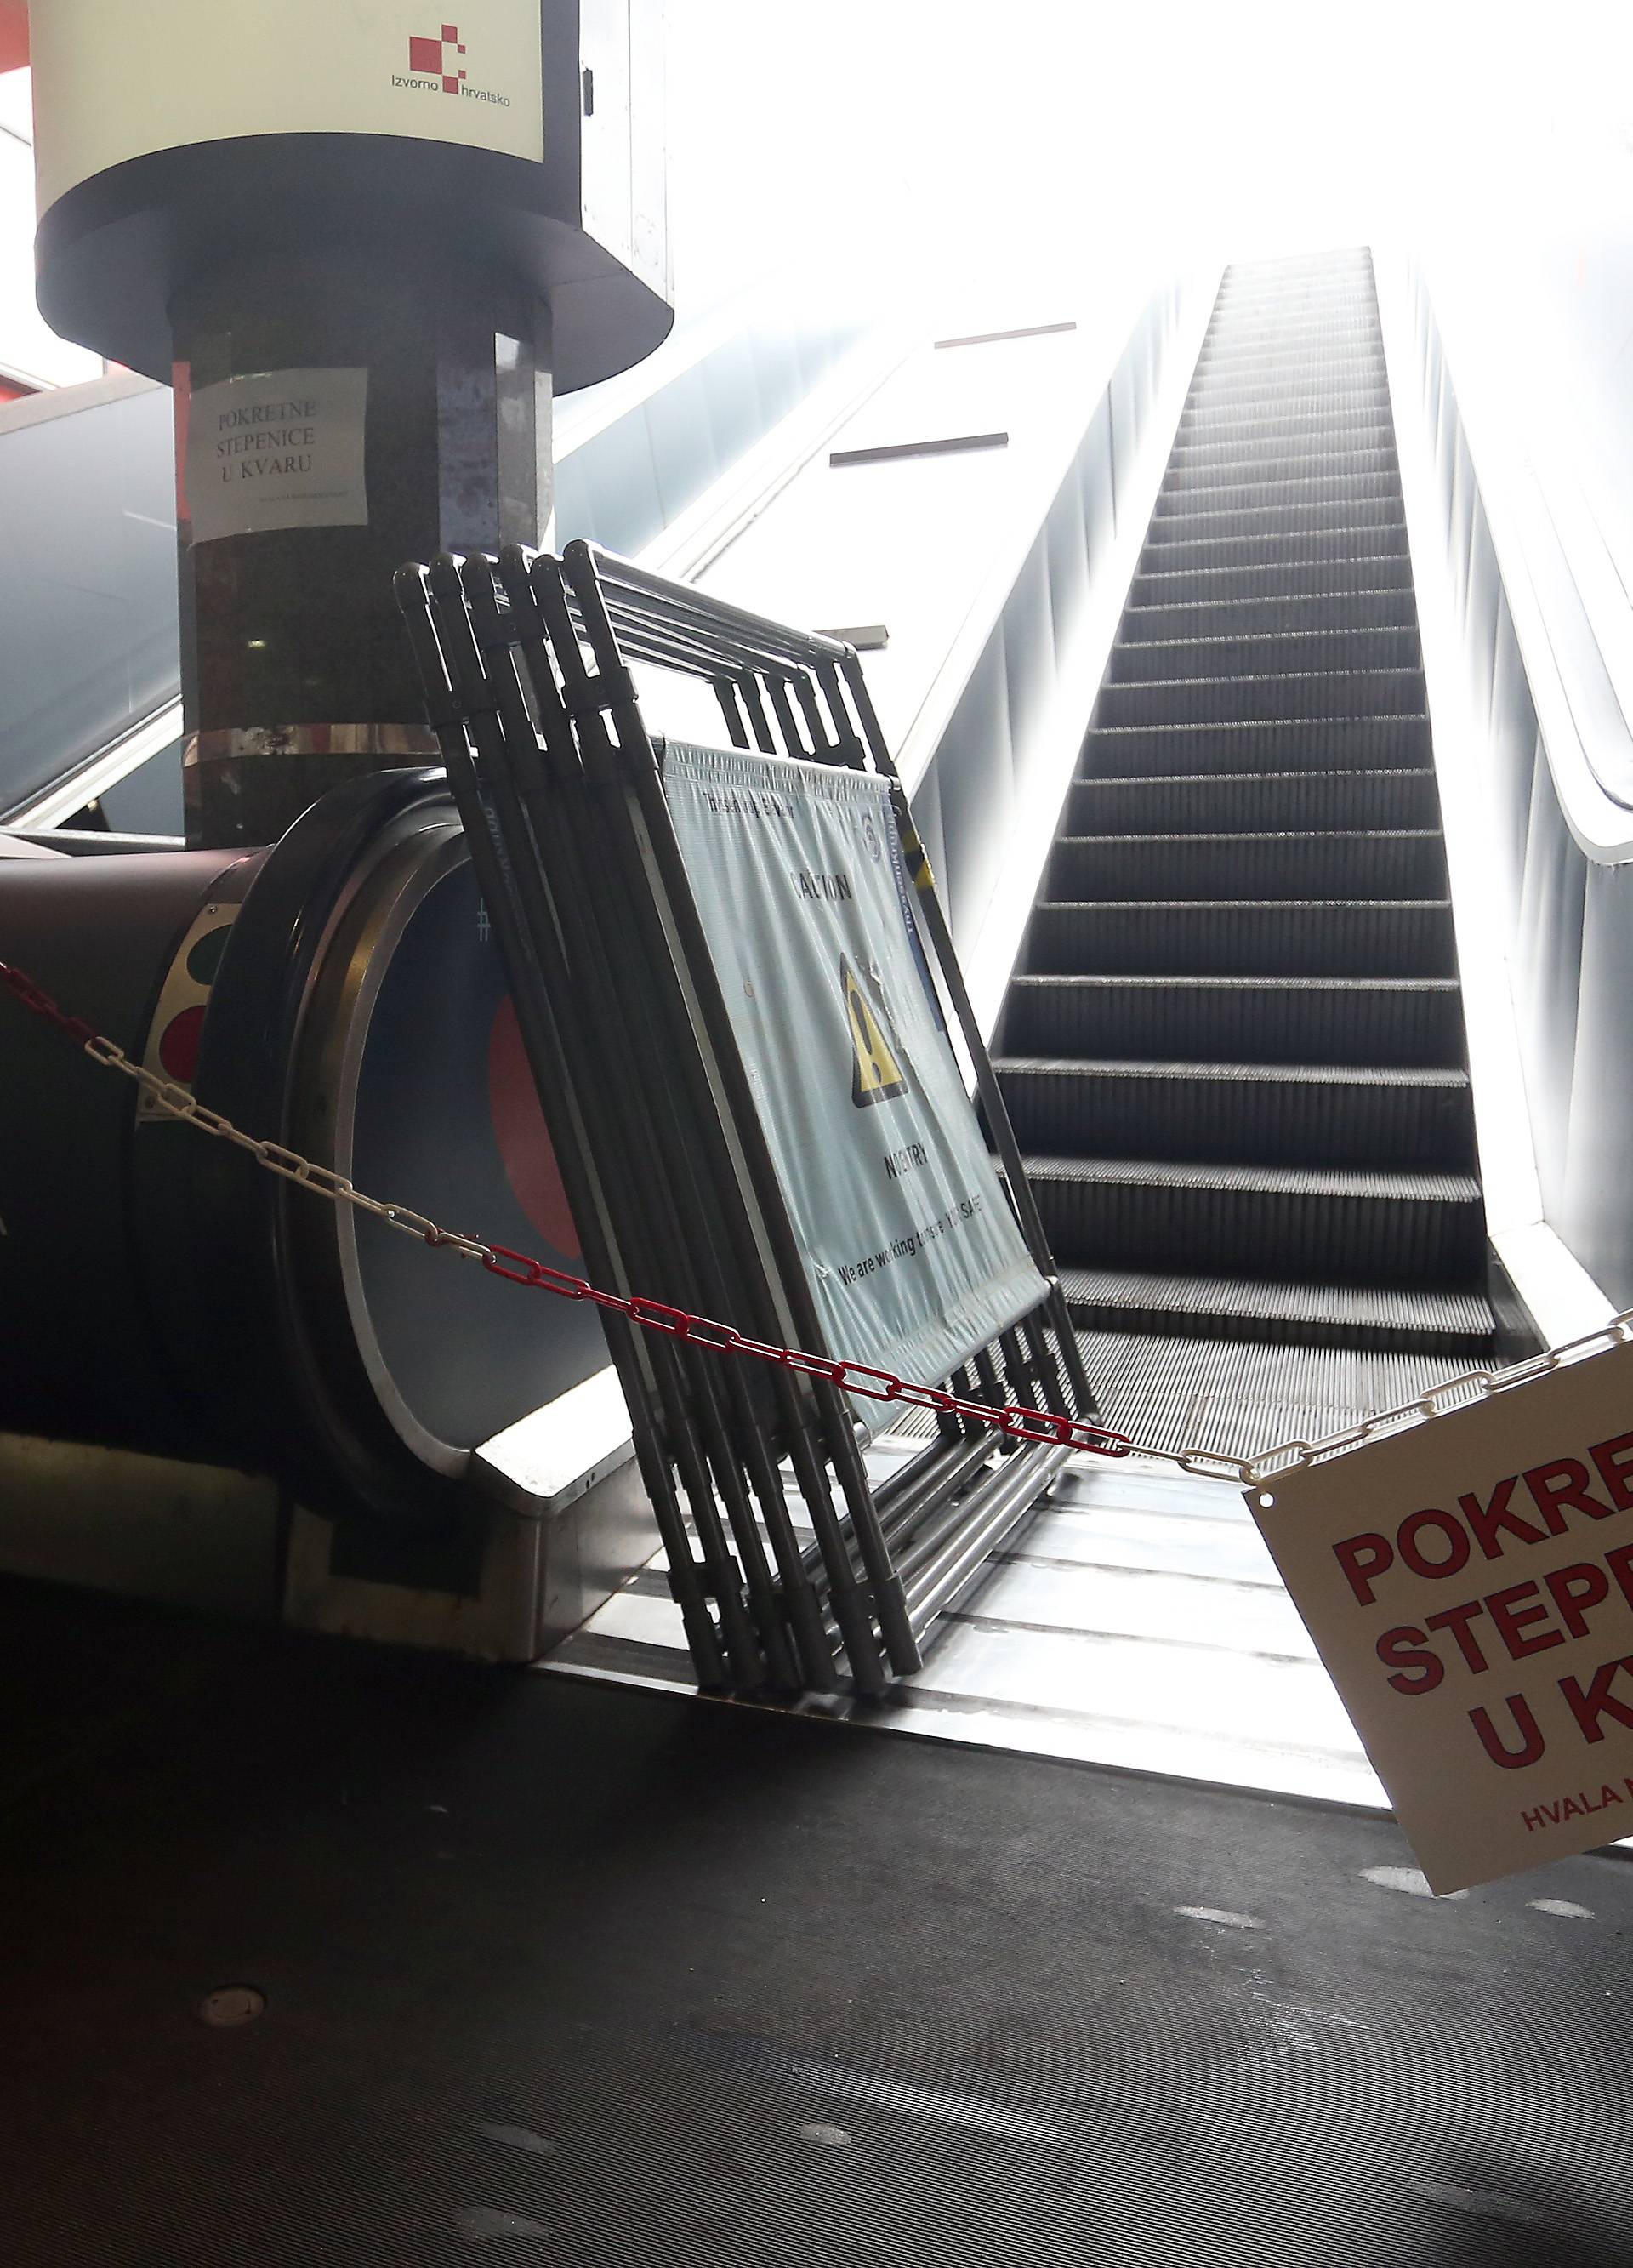 Svađa oko stepenica: Došli ih popraviti, zaštitari im nisu dali